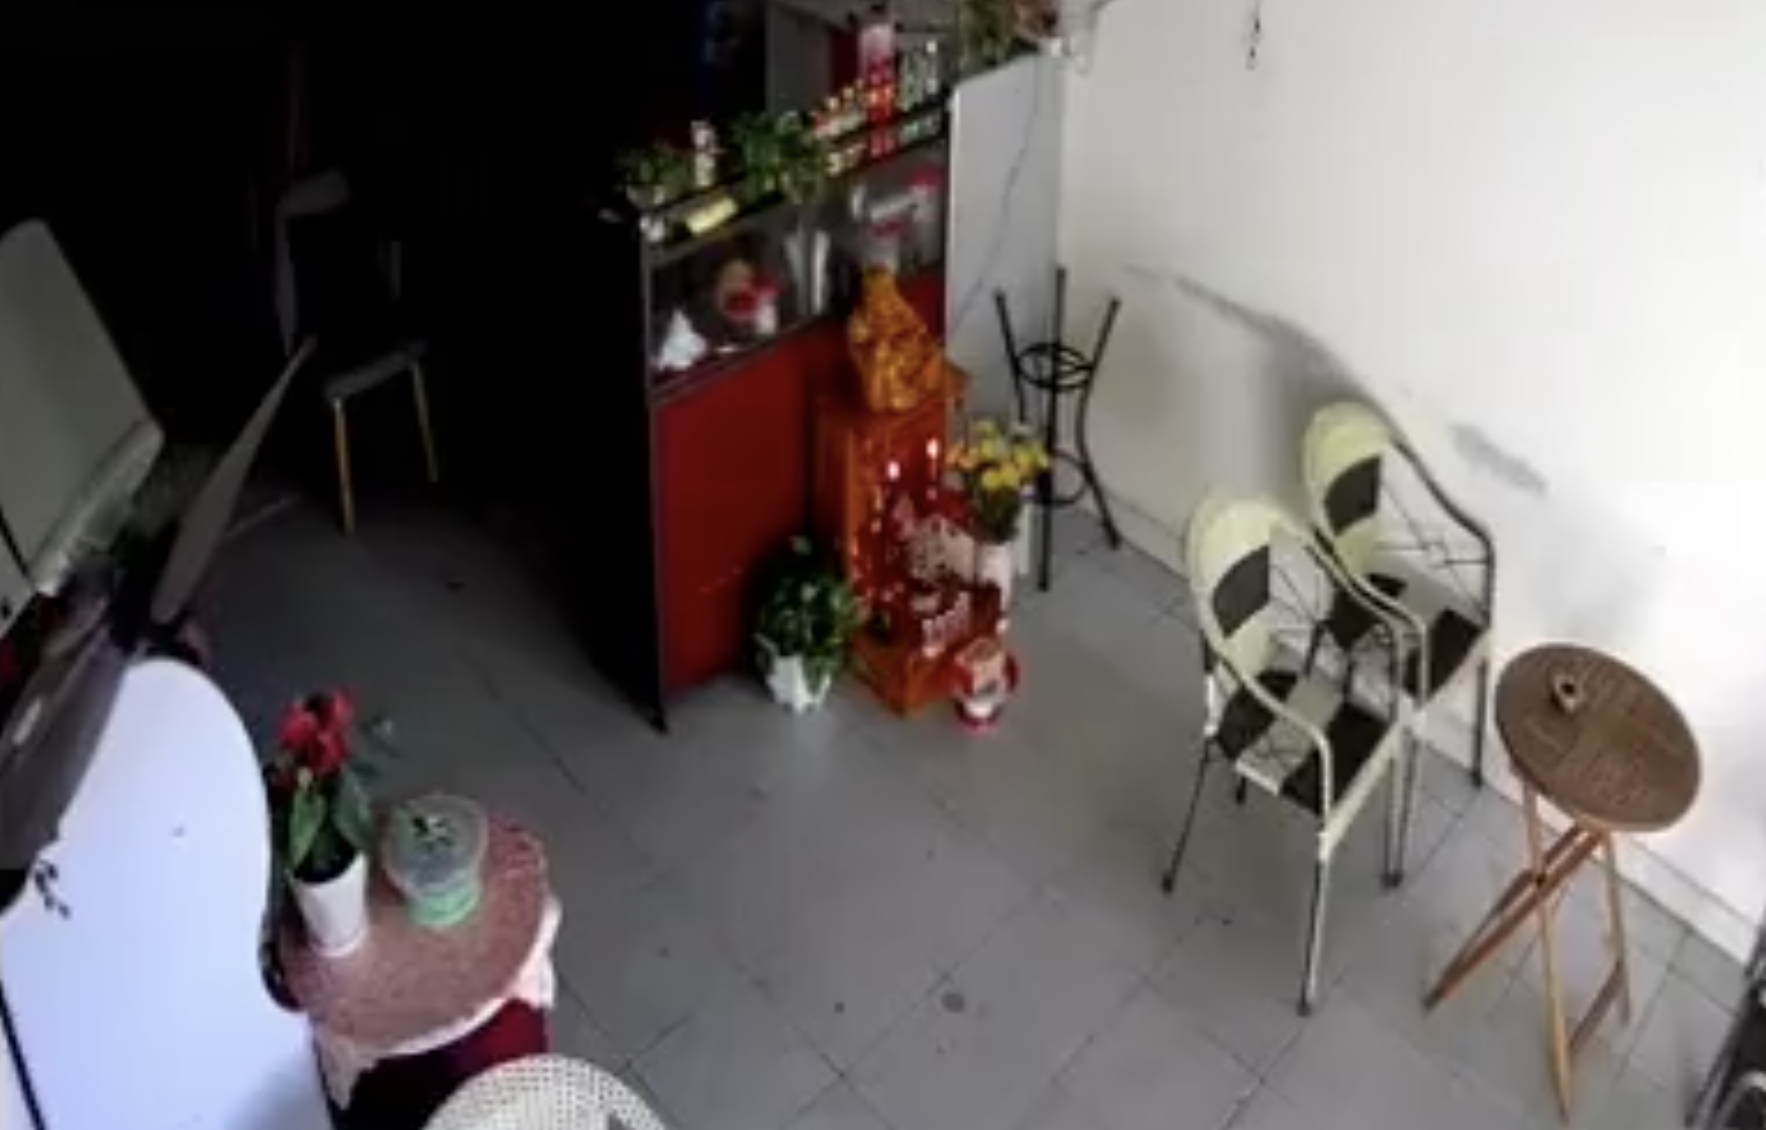 Hình ảnh camera tại quán cà phê ghi lại cảnh một người đàn ông mặc áo đỏ, quần ngắn sát hại nữ chủ quán